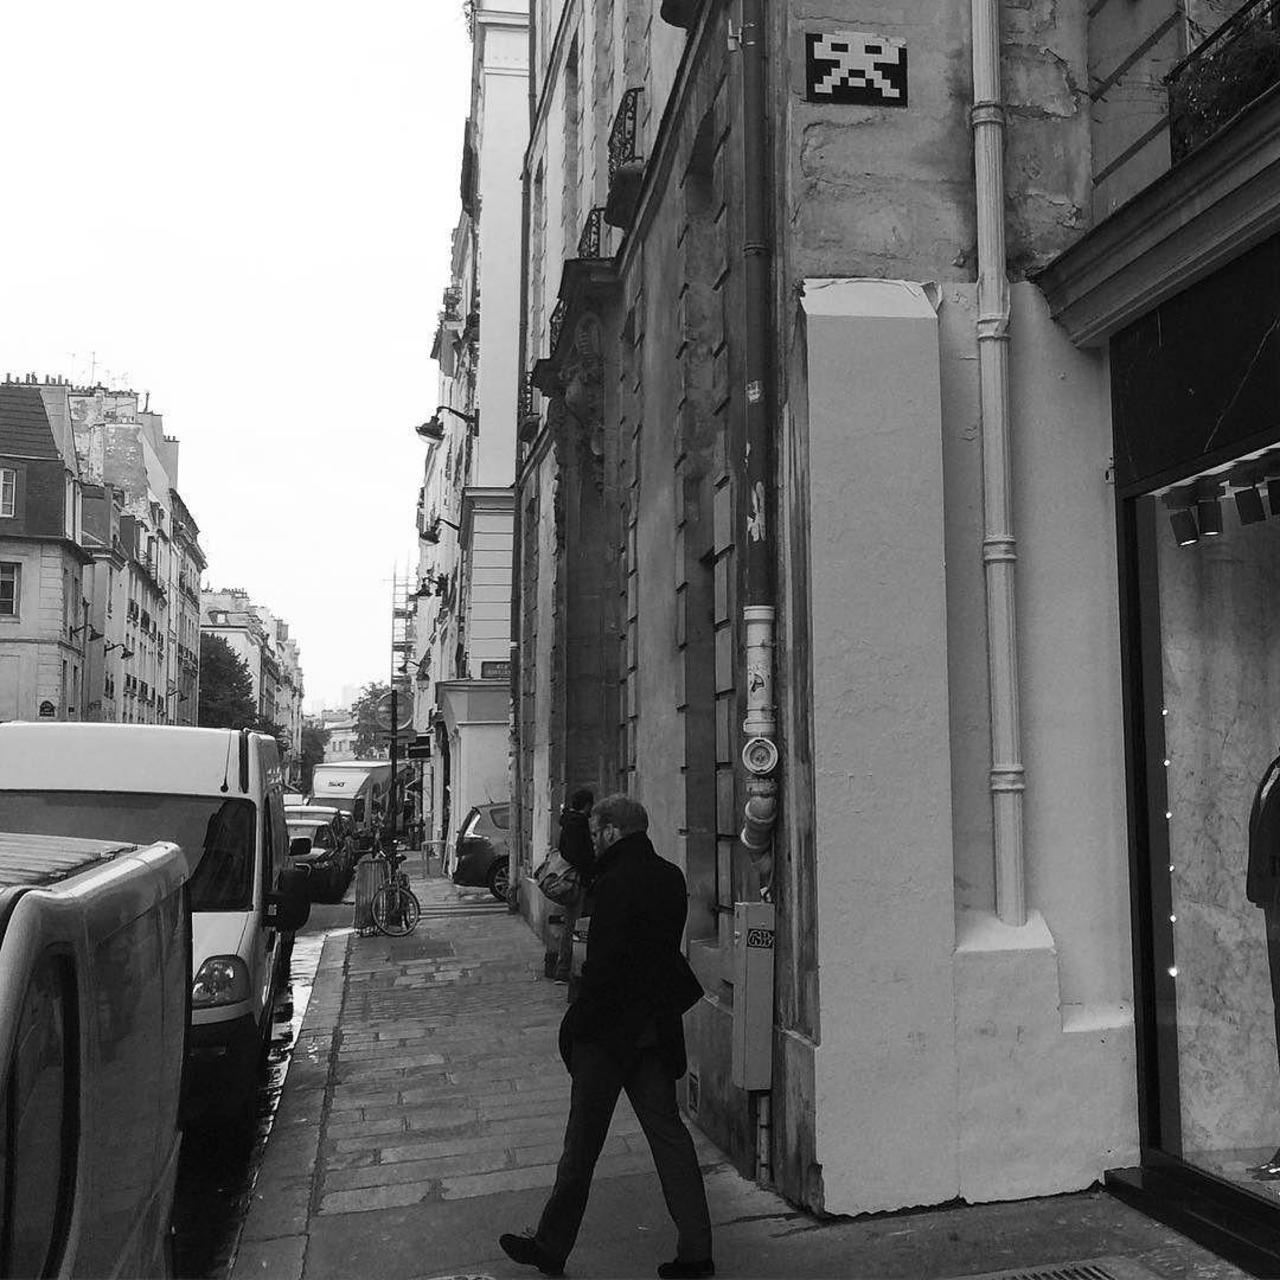 #Paris #graffiti photo by @julienvermeulen http://ift.tt/1RFRUWX #StreetArt http://t.co/oSr5TGHiw2